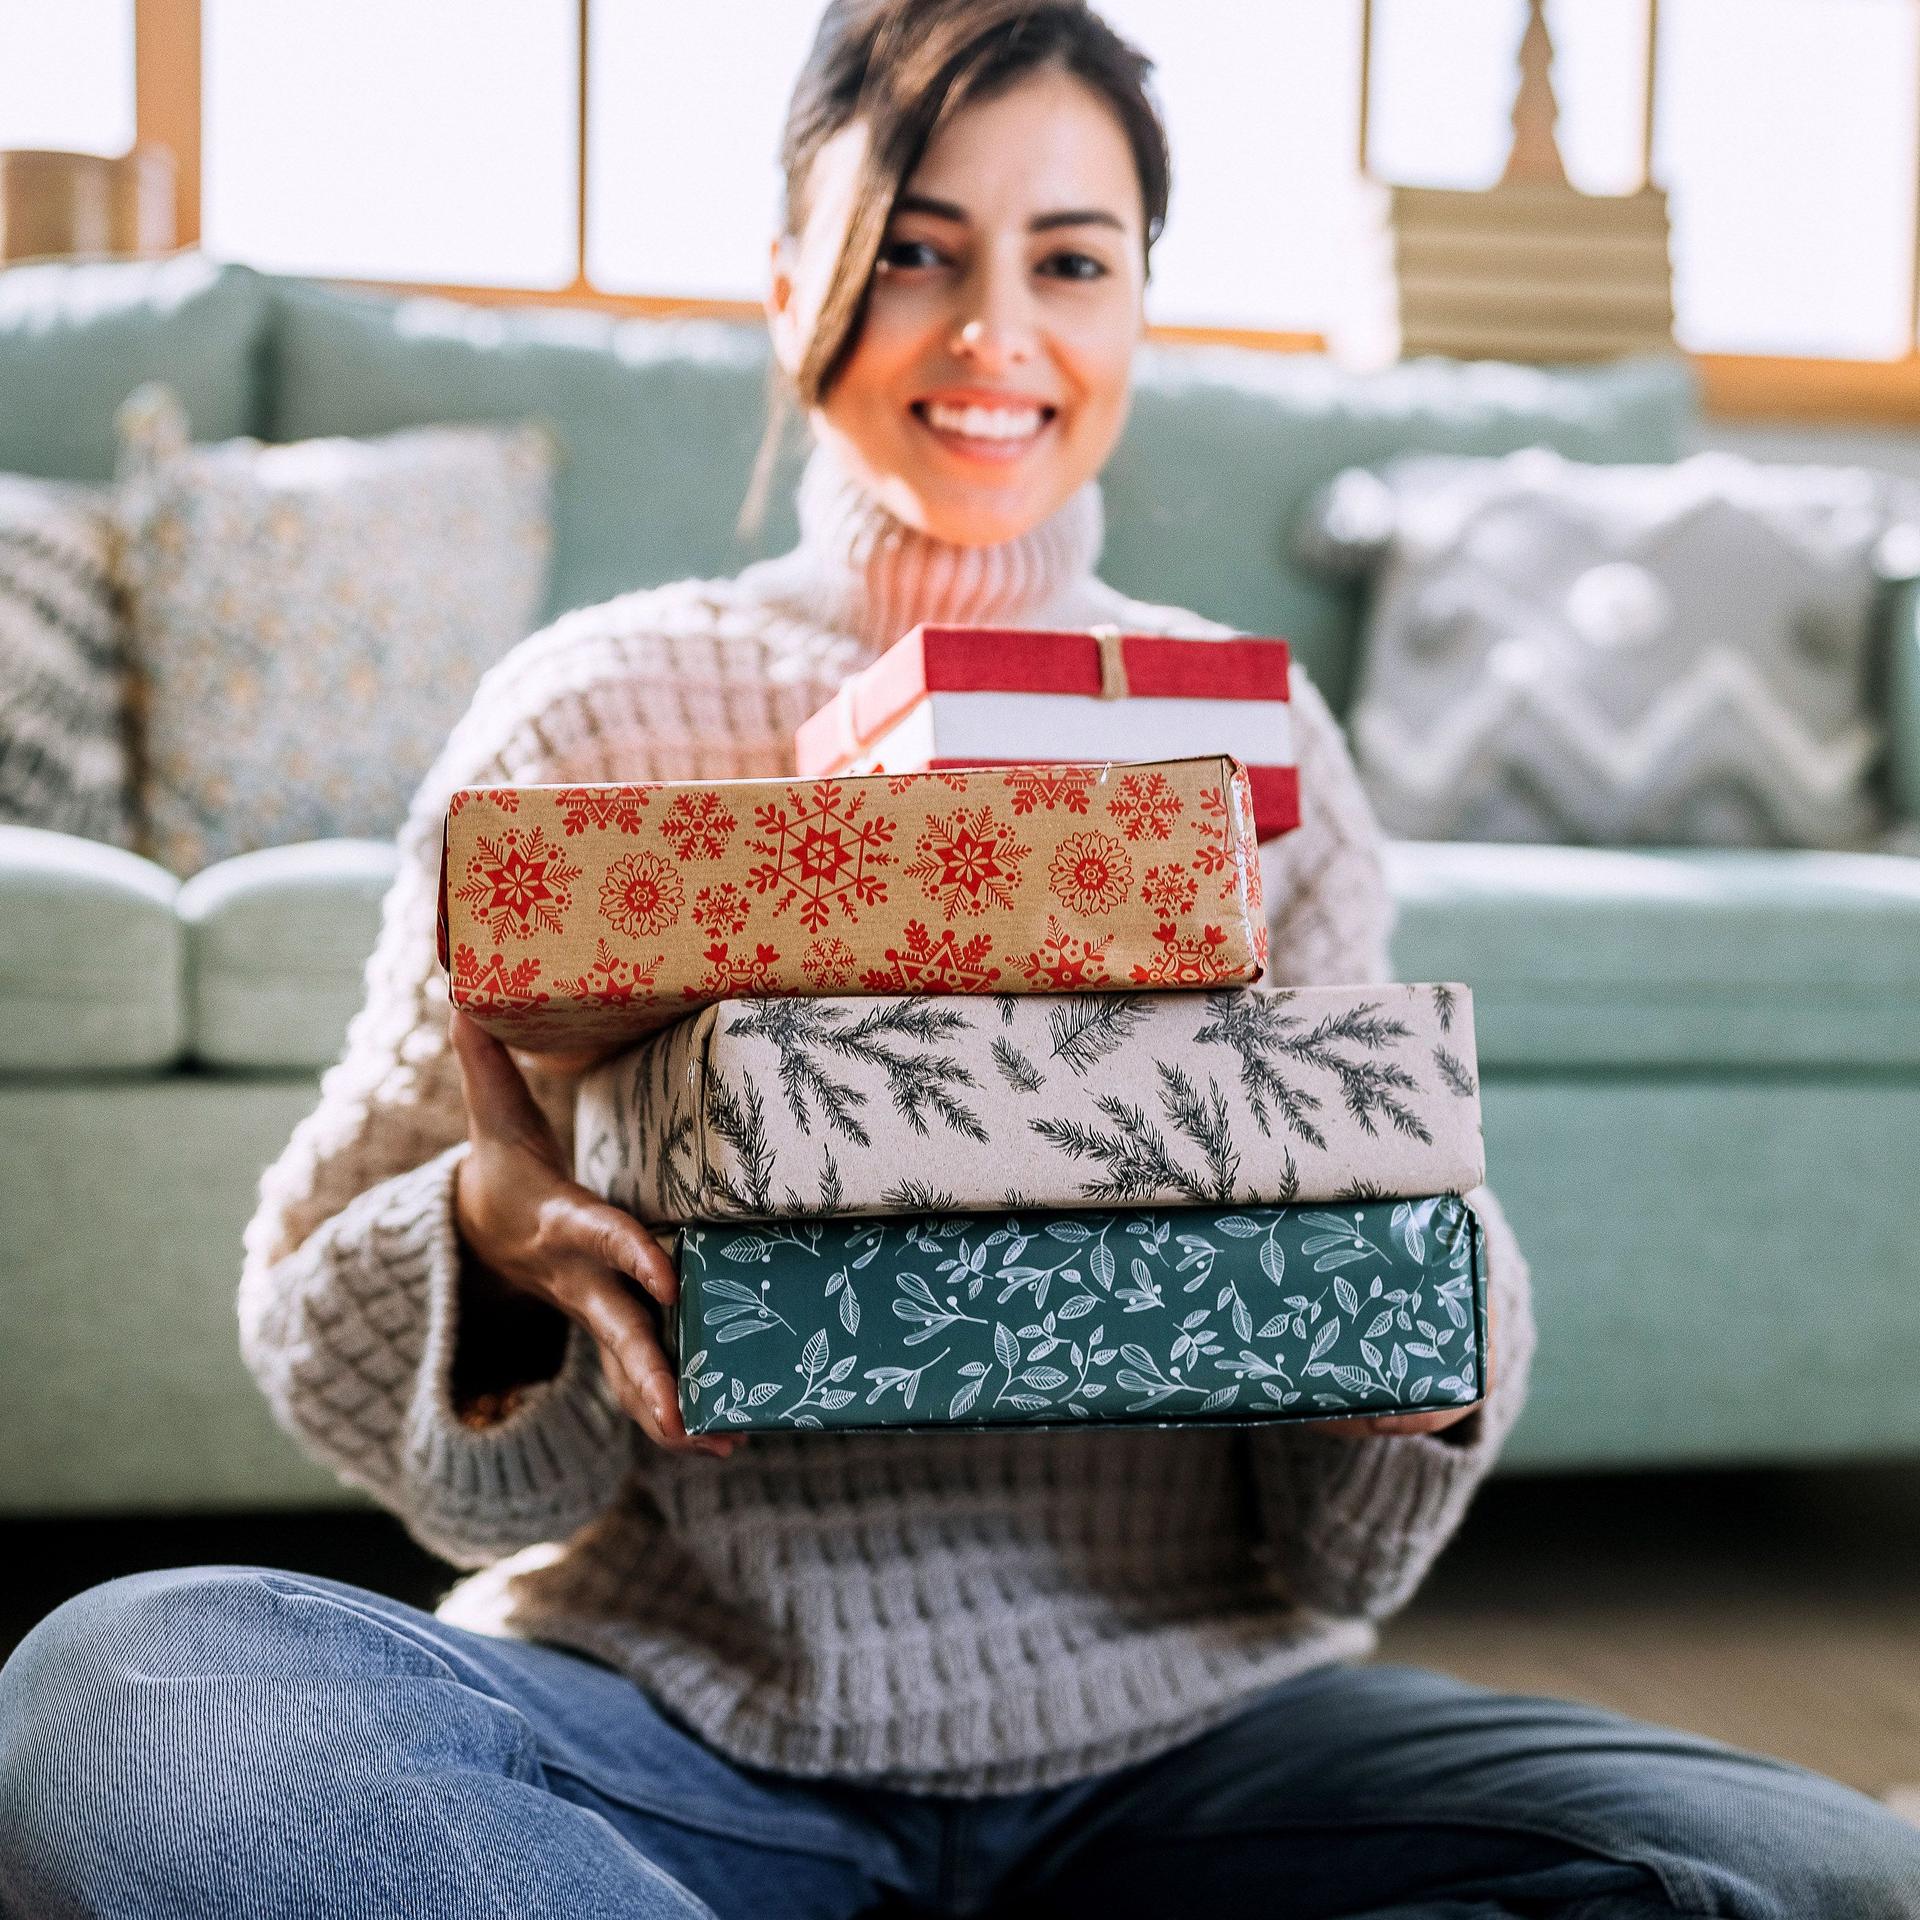 Porträt einer jungen Frau, die Weihnachtsgeschenke präsentiert während sie im Wohnzimmer vor der Couch auf den Boden sitzt